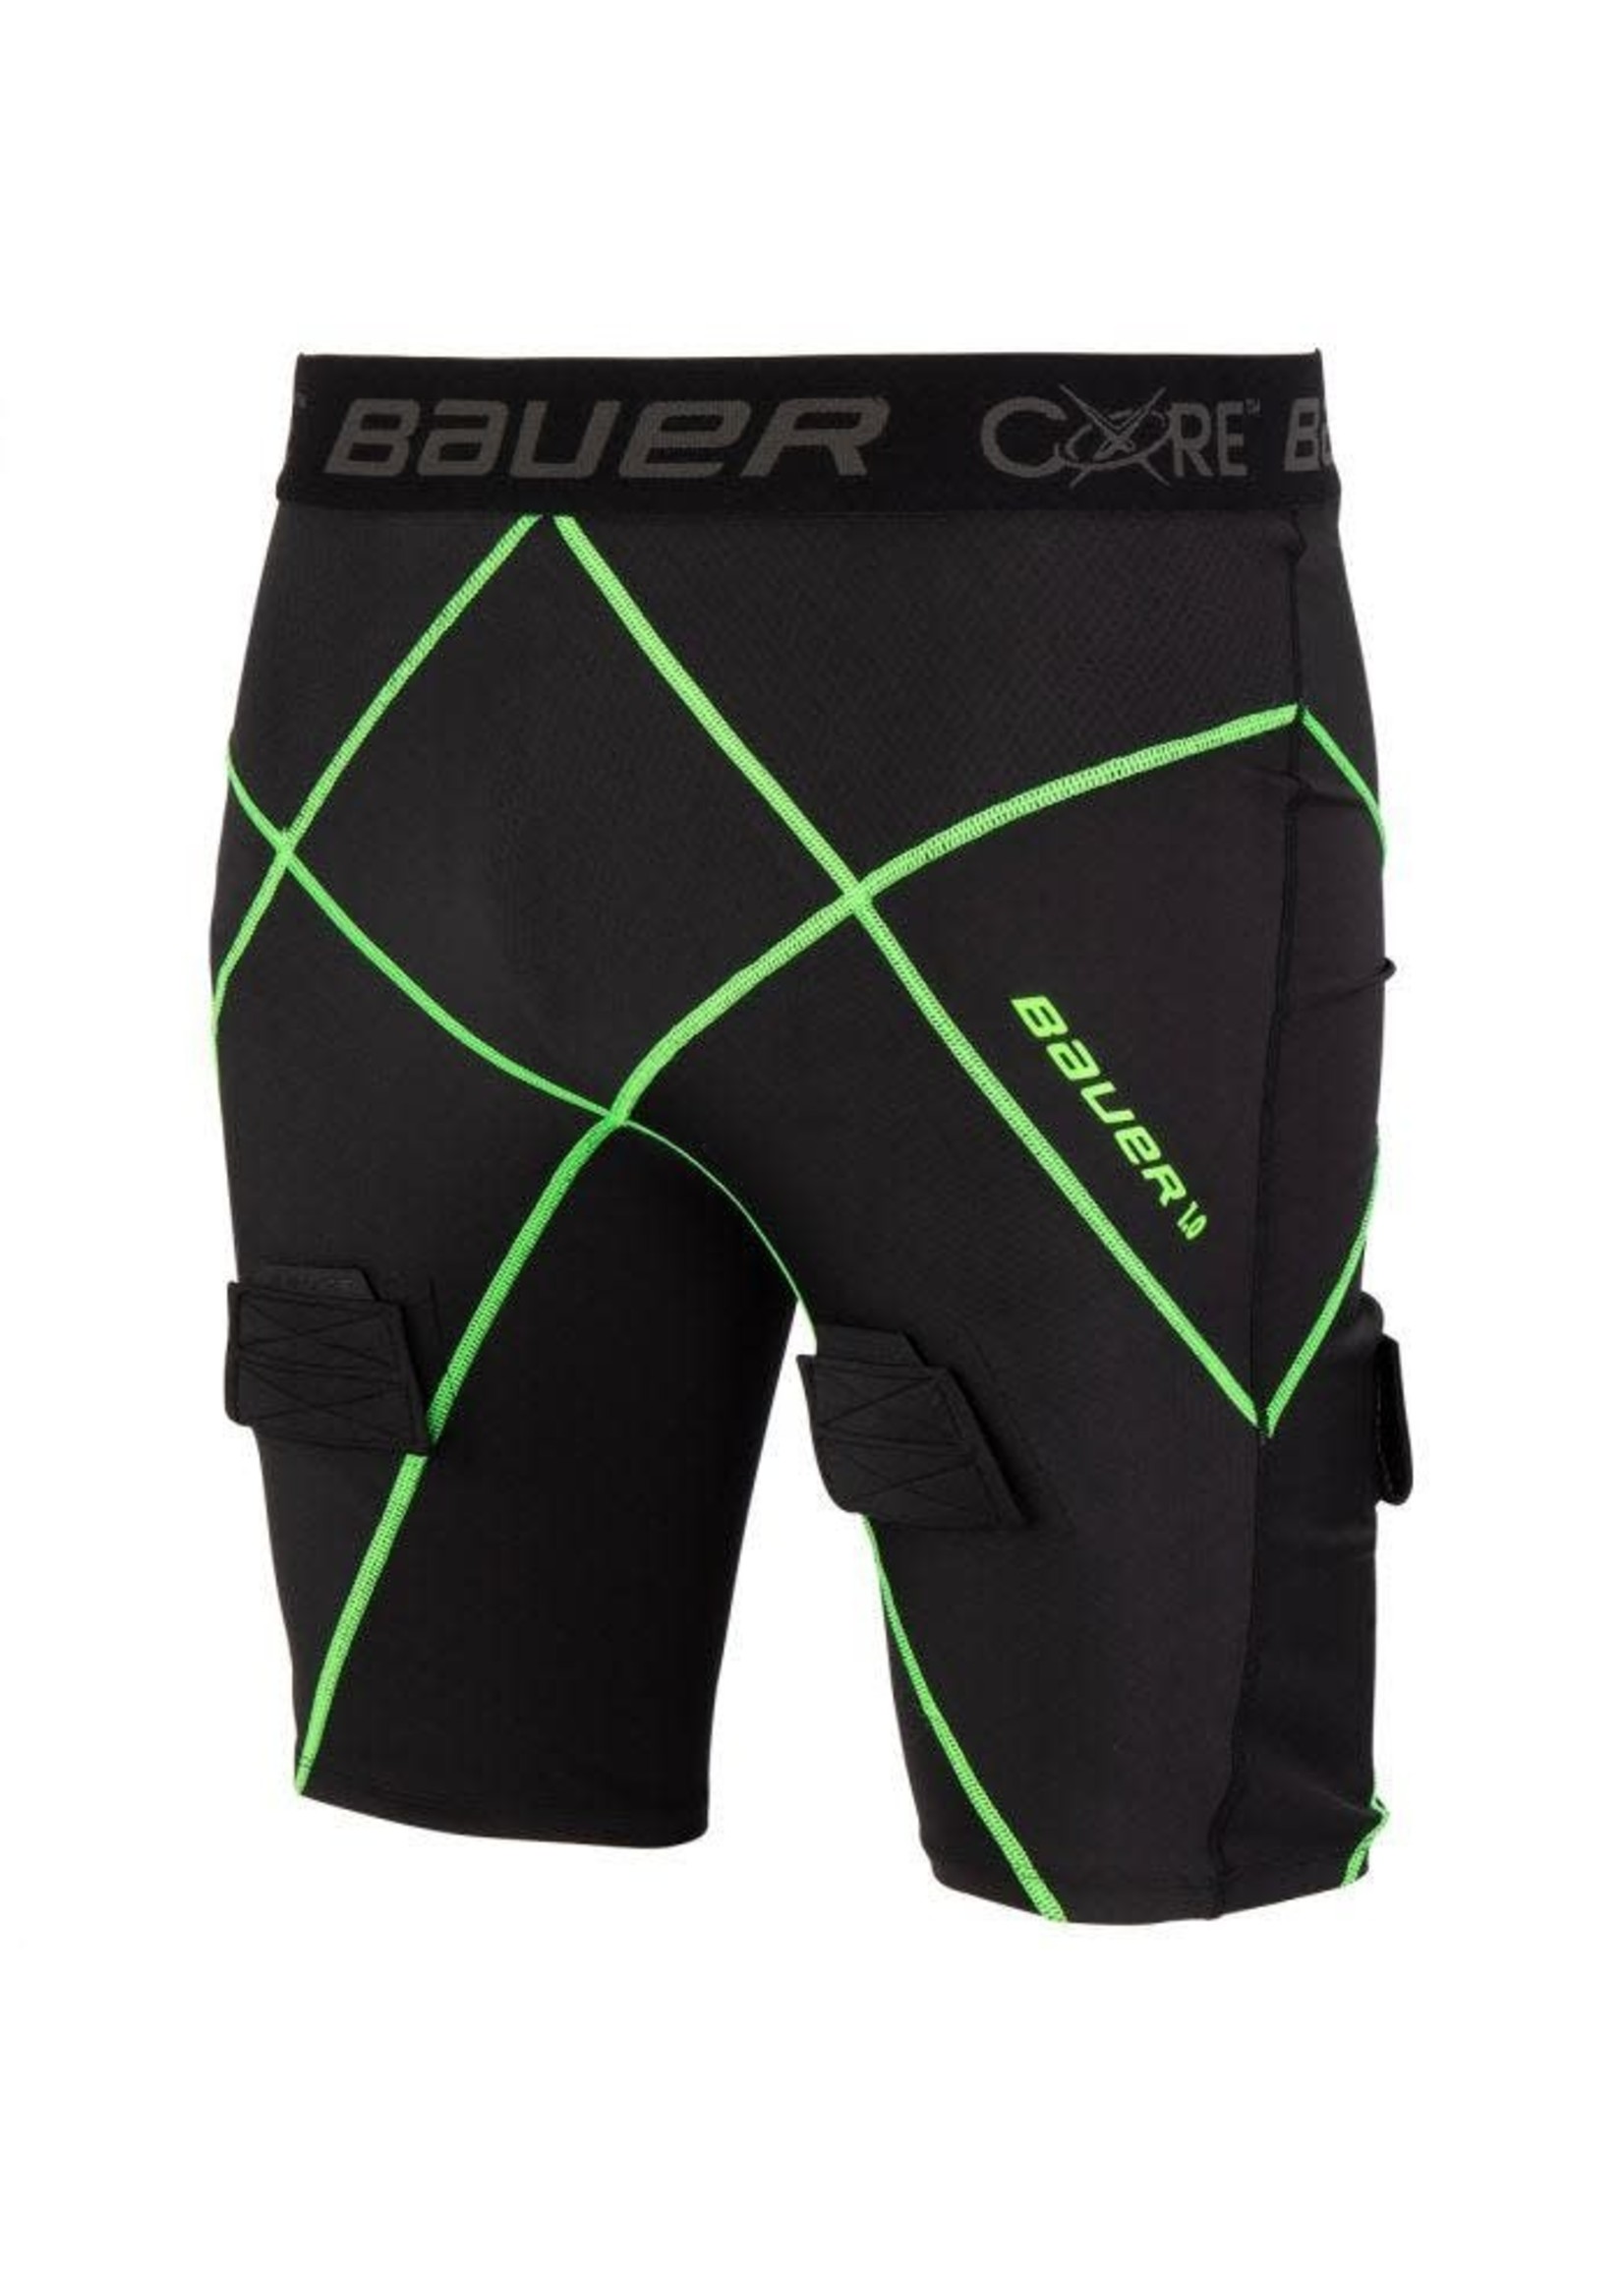 Bauer Hockey Bauer Core Jock Short